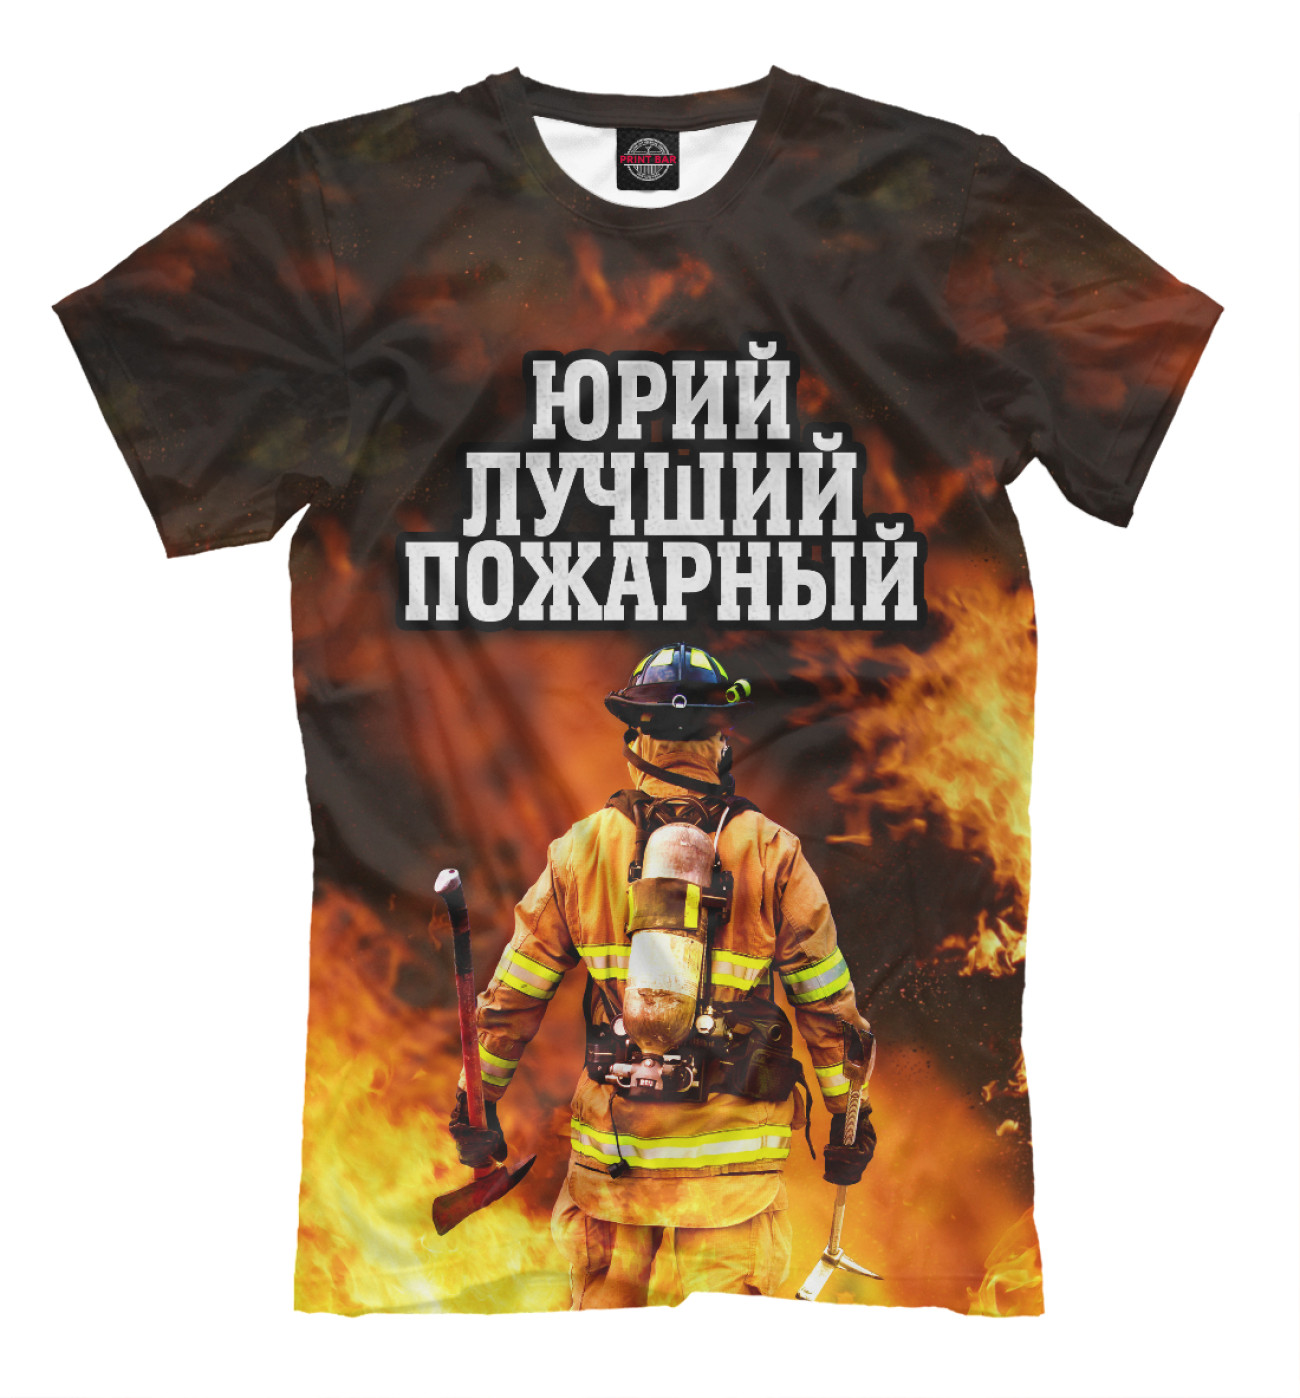 Мужская Футболка Юрий лучший пожарный, артикул: YUR-870922-fut-2